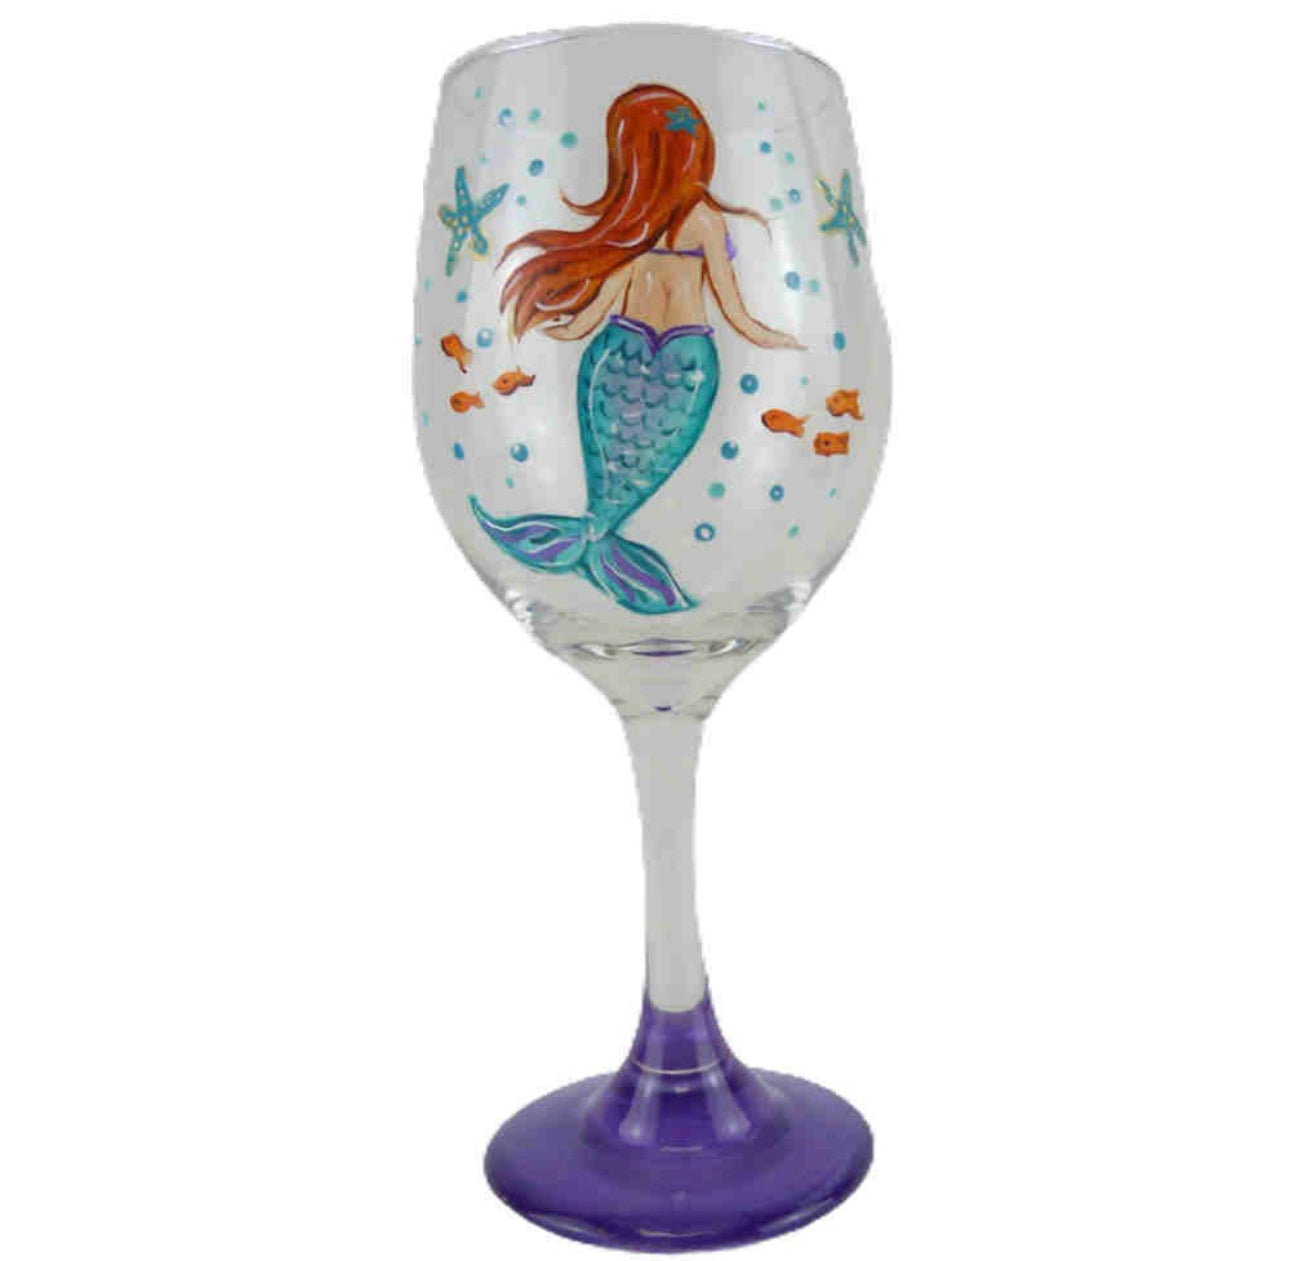 Hand Painted Stemware Wine Glass